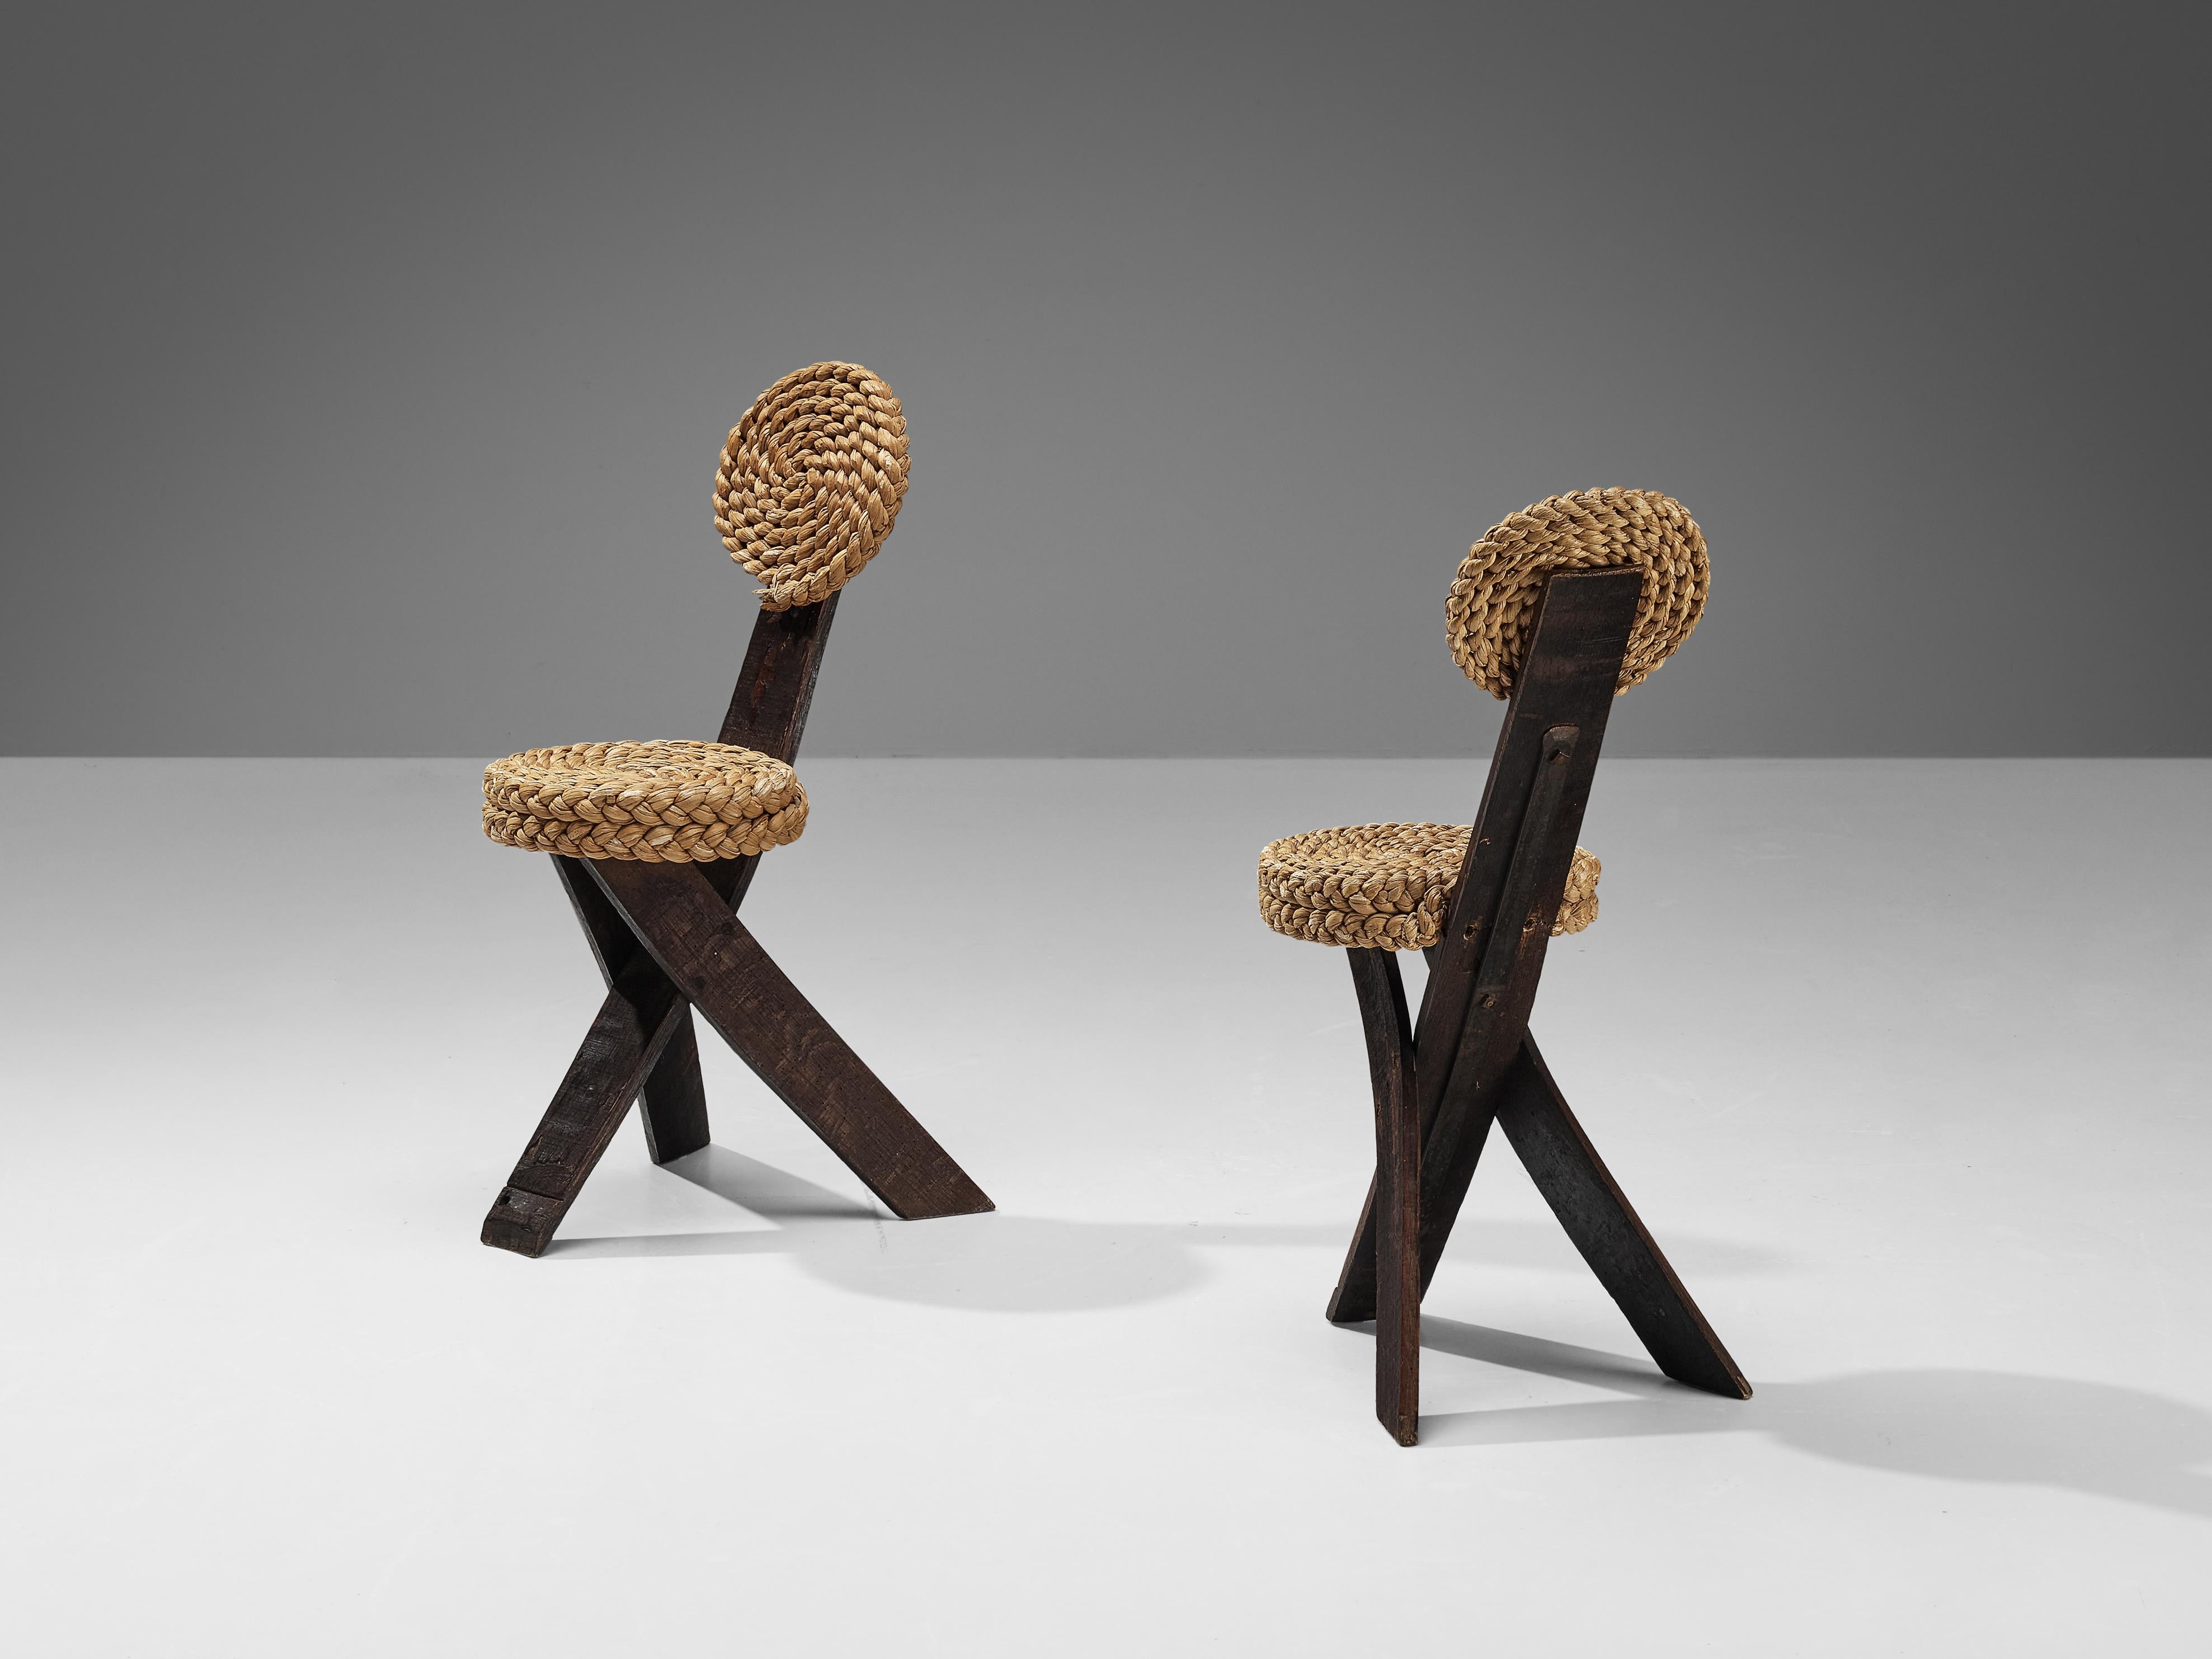 Adrien Audoux und Frida Minet, Beistellstühle, Eiche, Stroh, Eisen, Frankreich, 1950er Jahre

Dieser skulpturale Beistellstuhl wurde von dem französischen Designerpaar Adrien Audoux und Frida Minet entworfen. Die drei flachen Beine sind aus dunkler